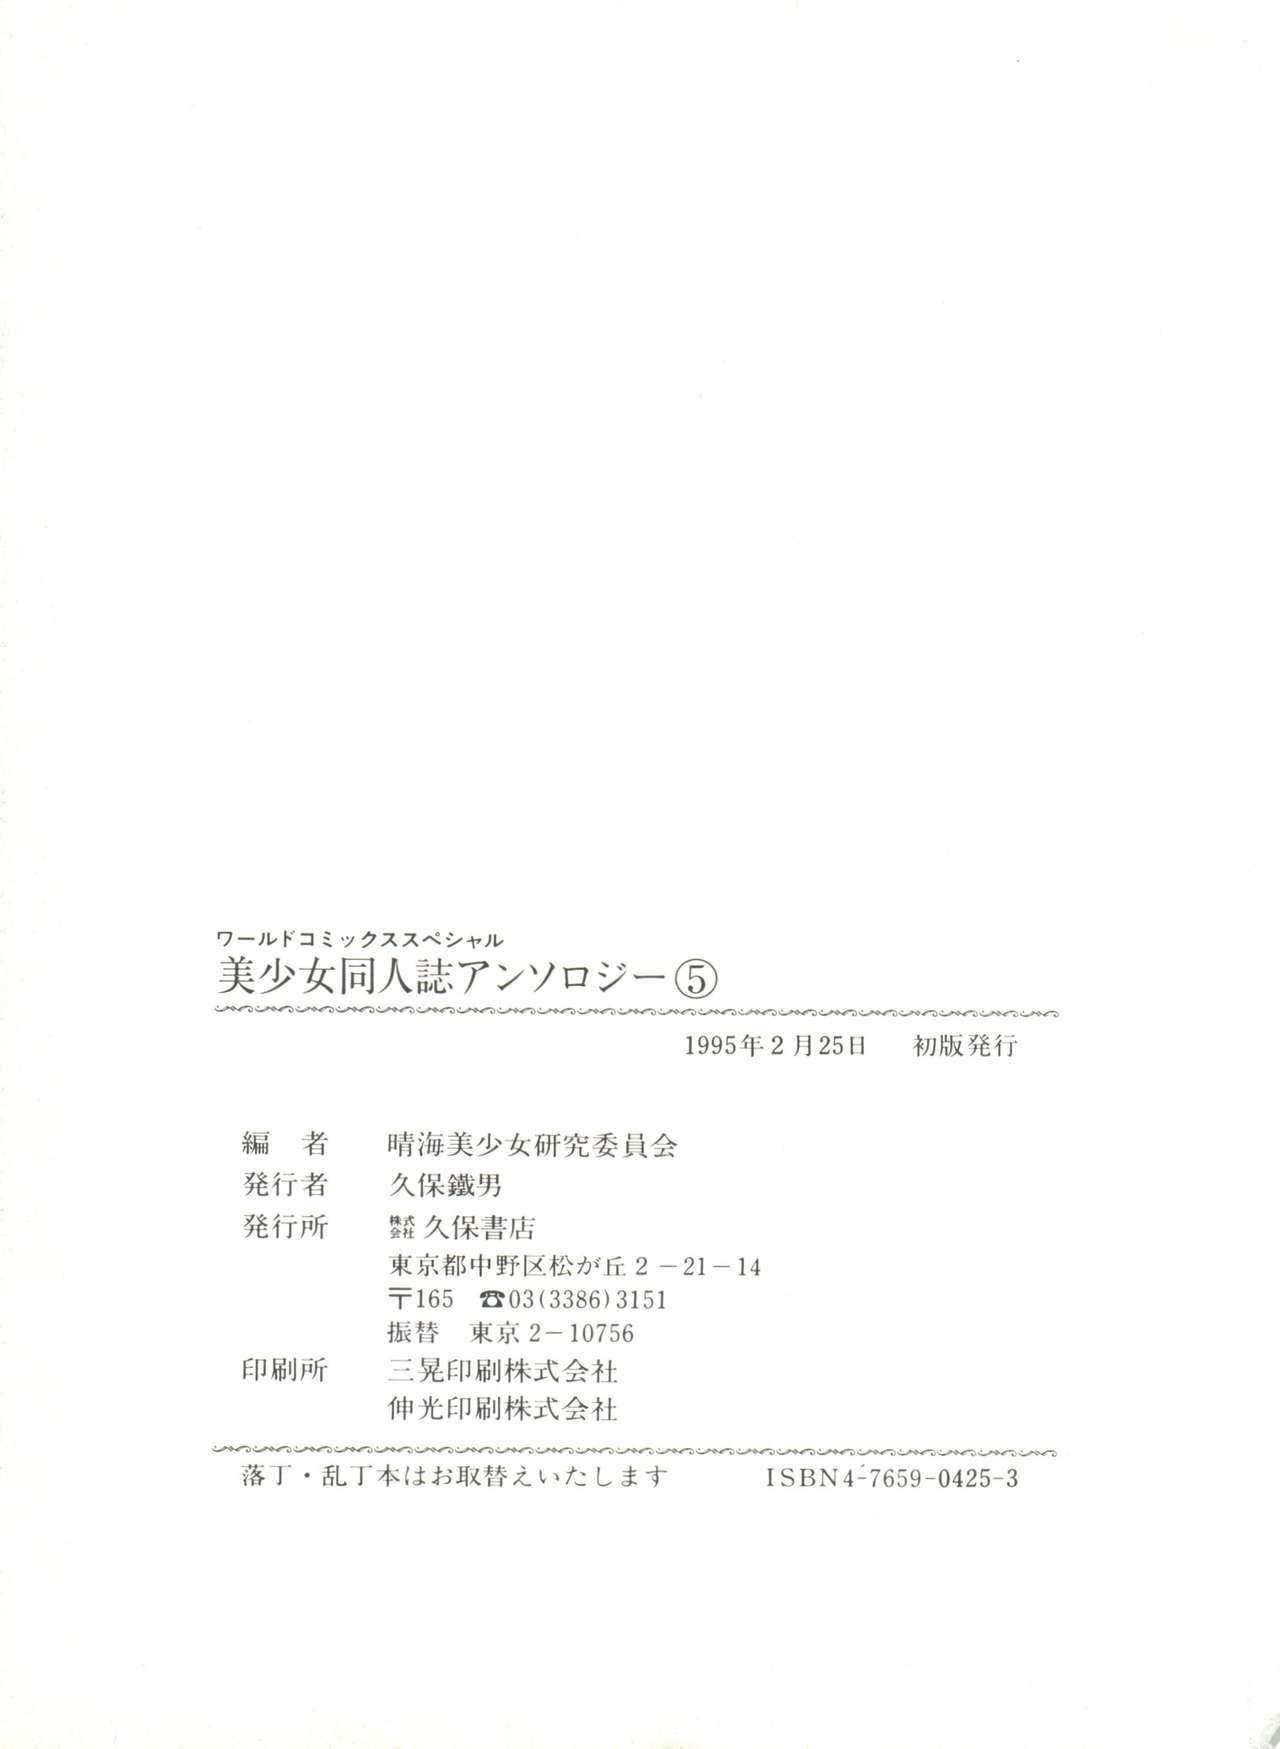 Bishoujo Doujinshi Anthology 5 - Moon Paradise 3 Tsuki no Rakuen 144